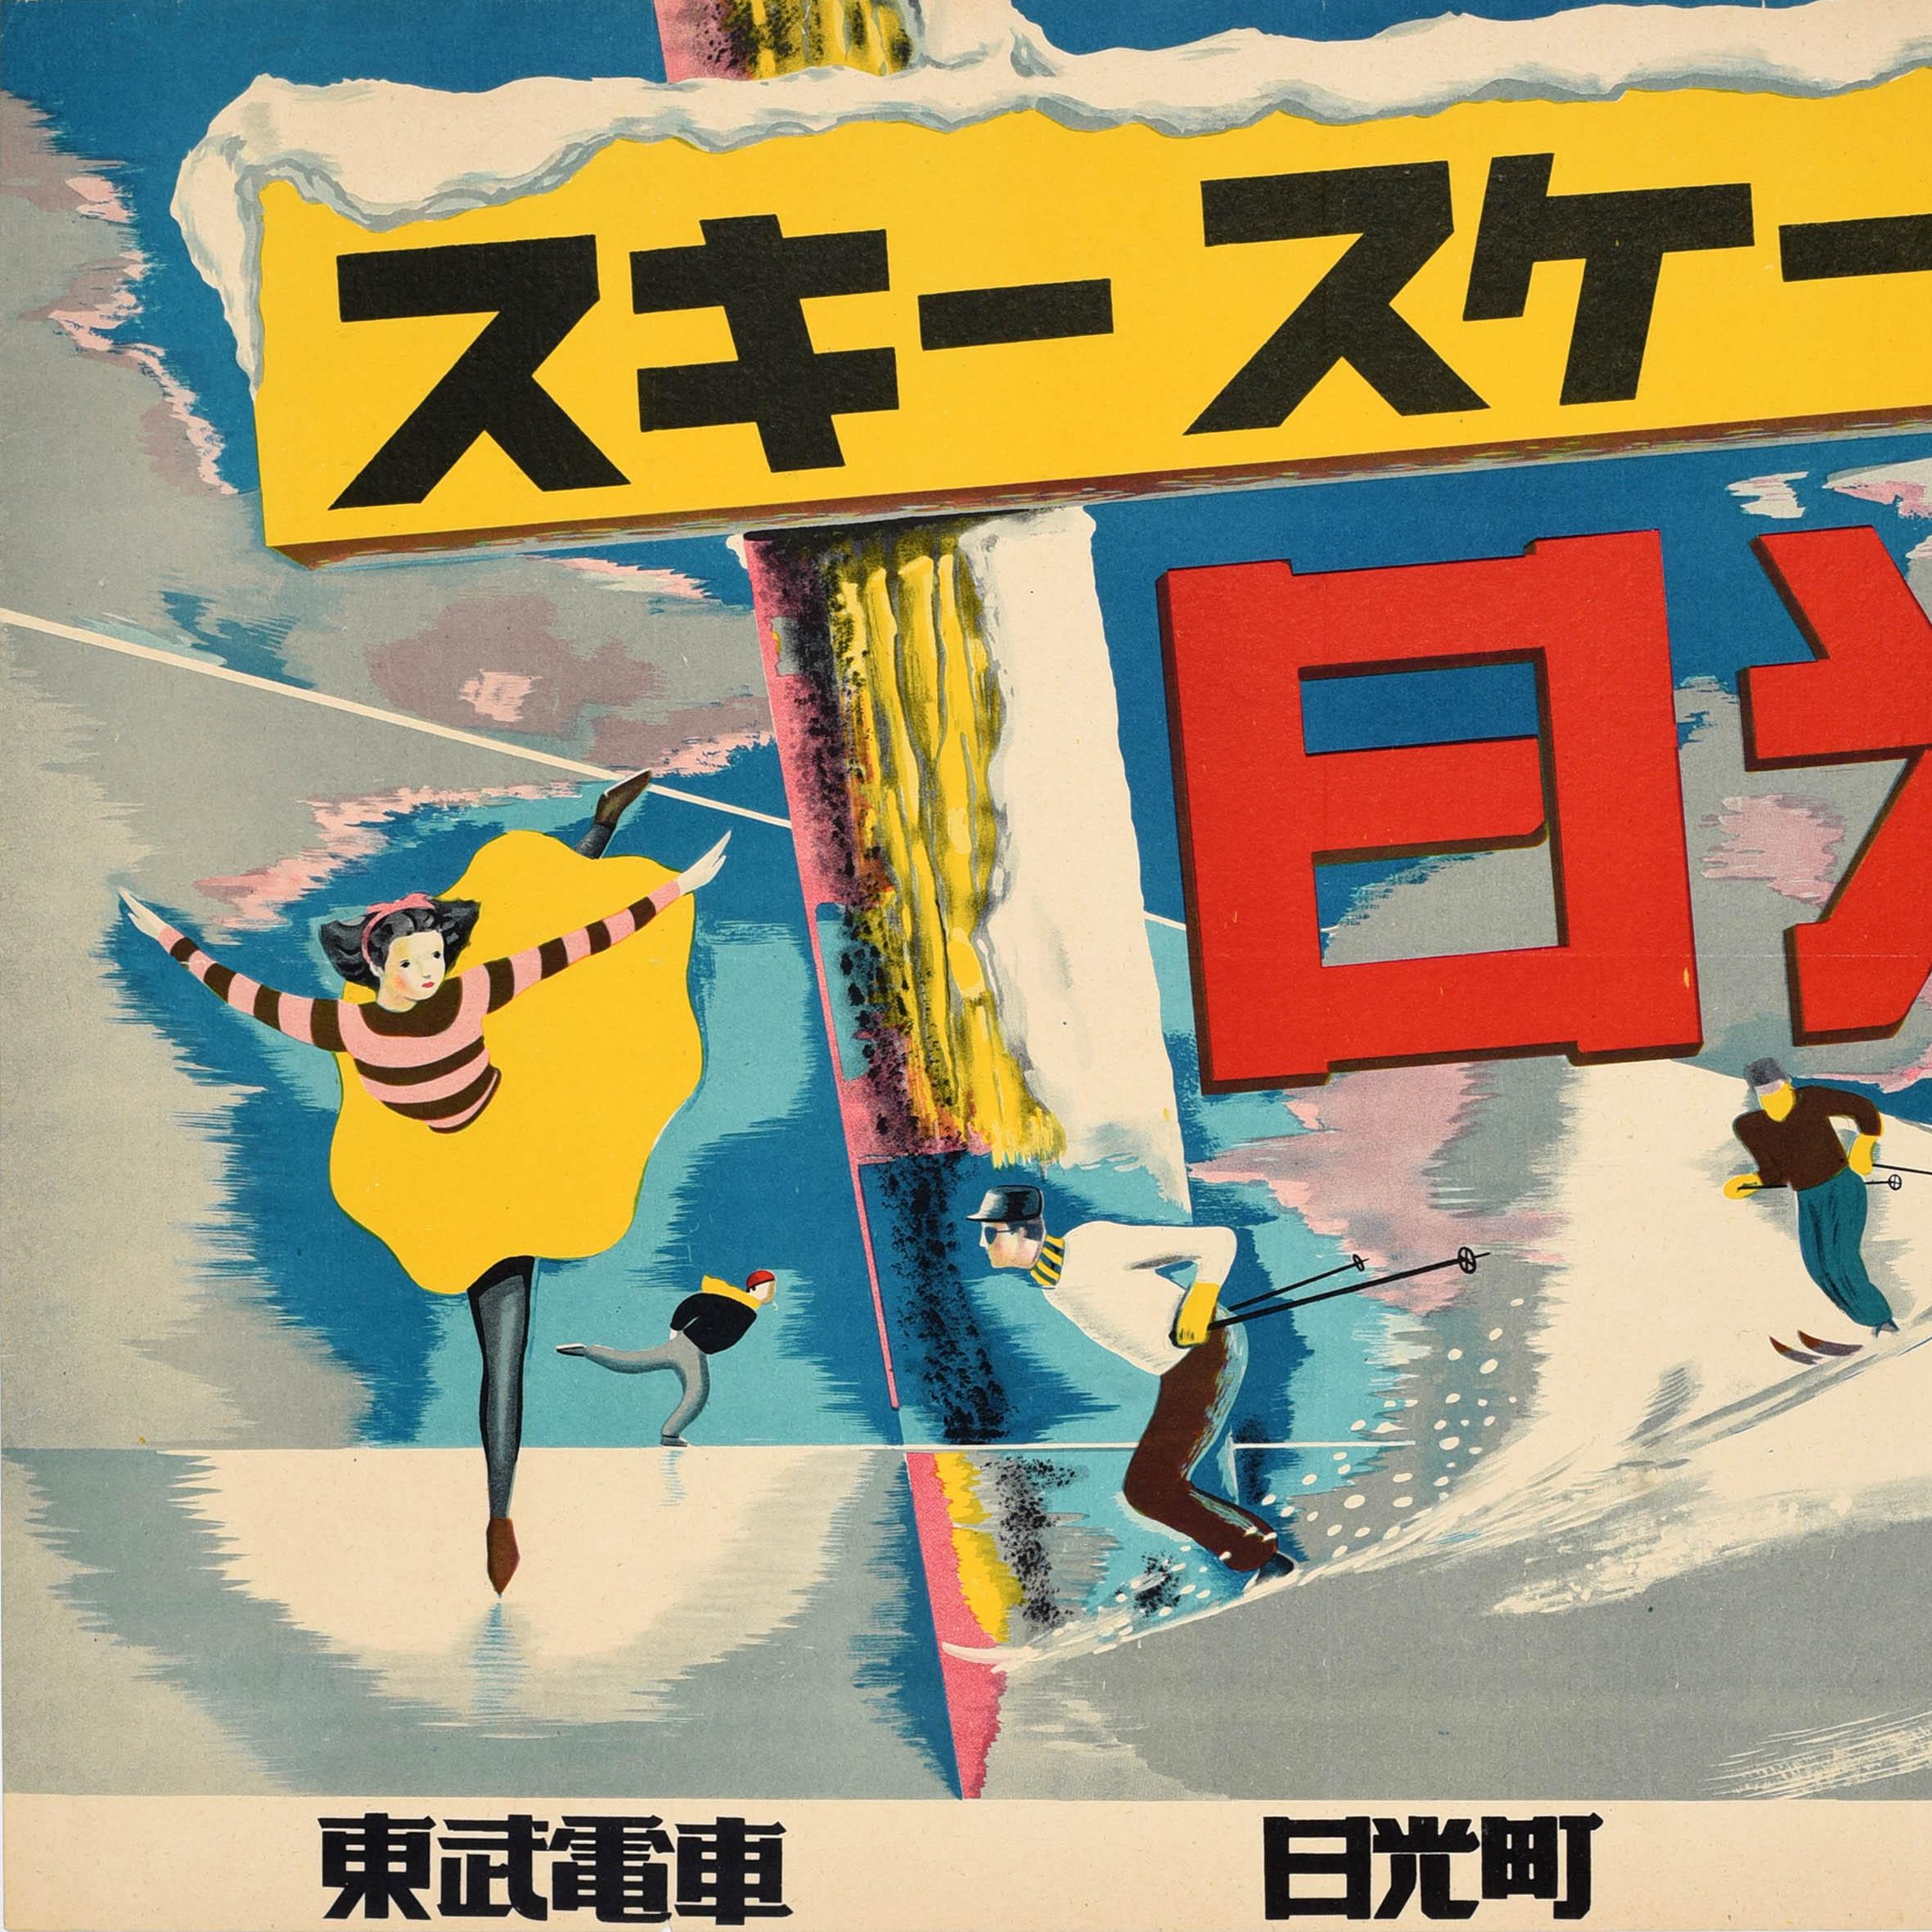 Japanese Original Vintage Winter Sport Railway Travel Poster Japan Ski Skating Sunshine For Sale